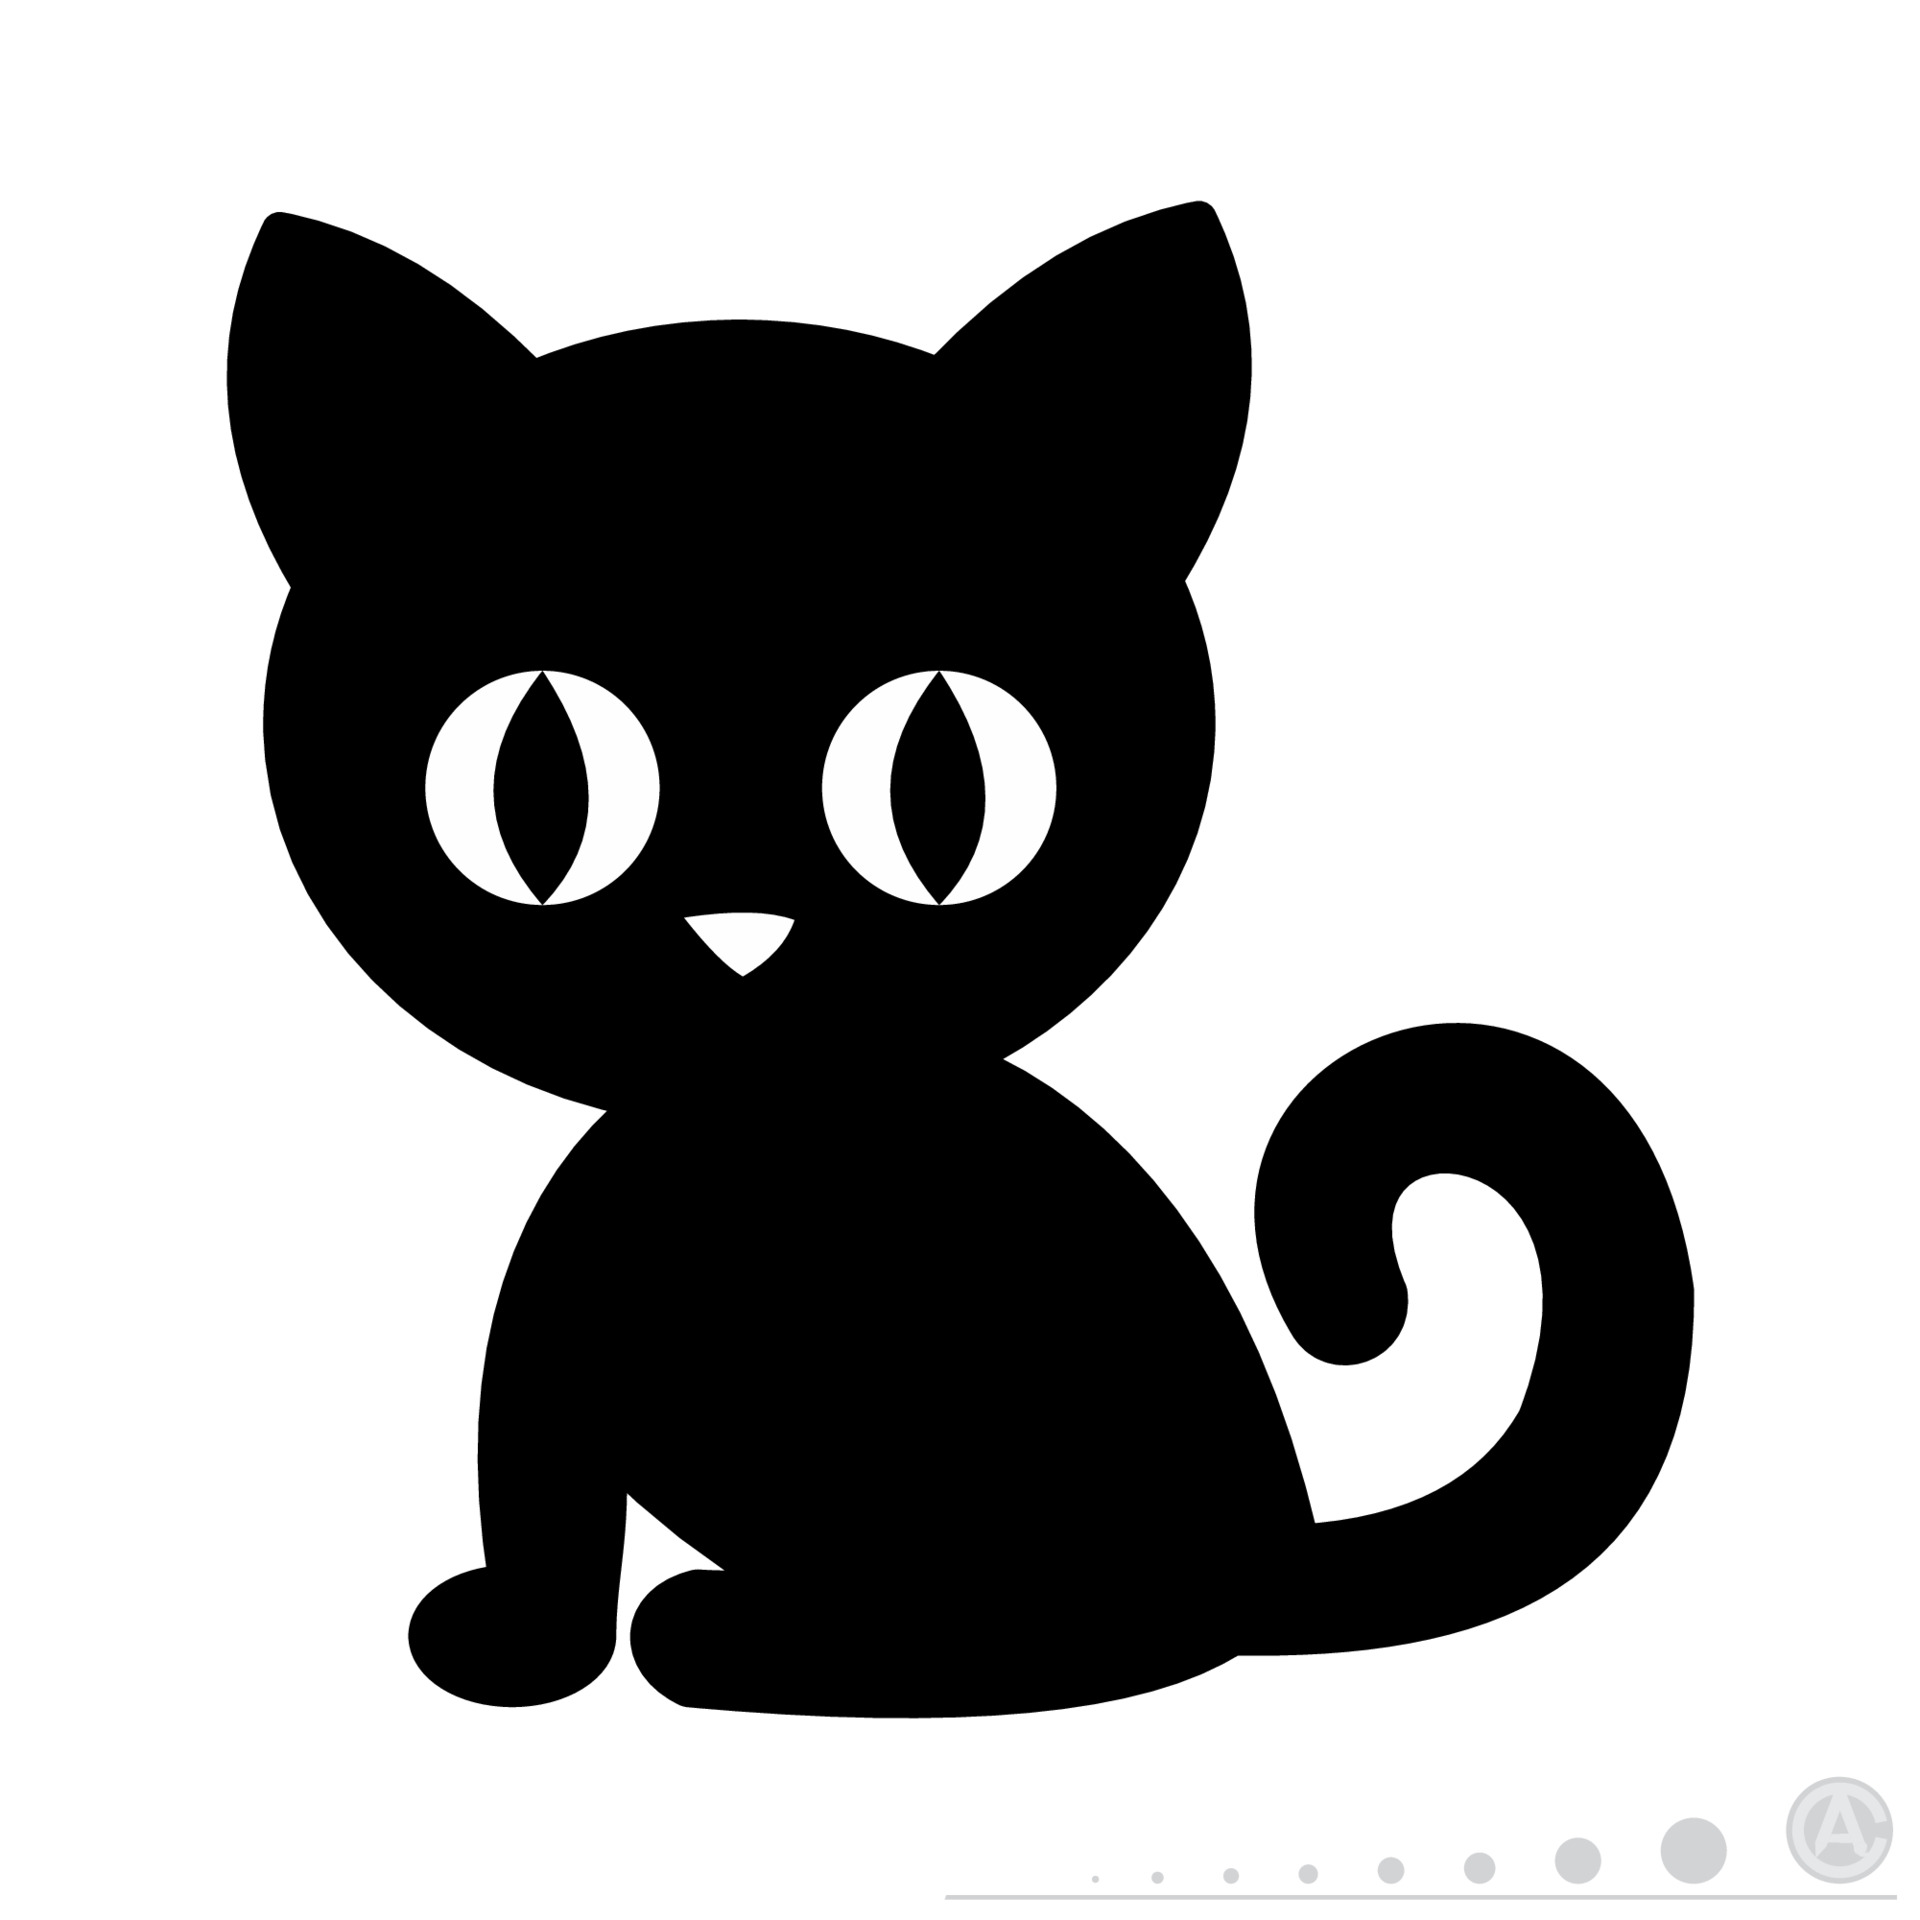 Cute black cat icon Royalty Free Vector Image - VectorStock